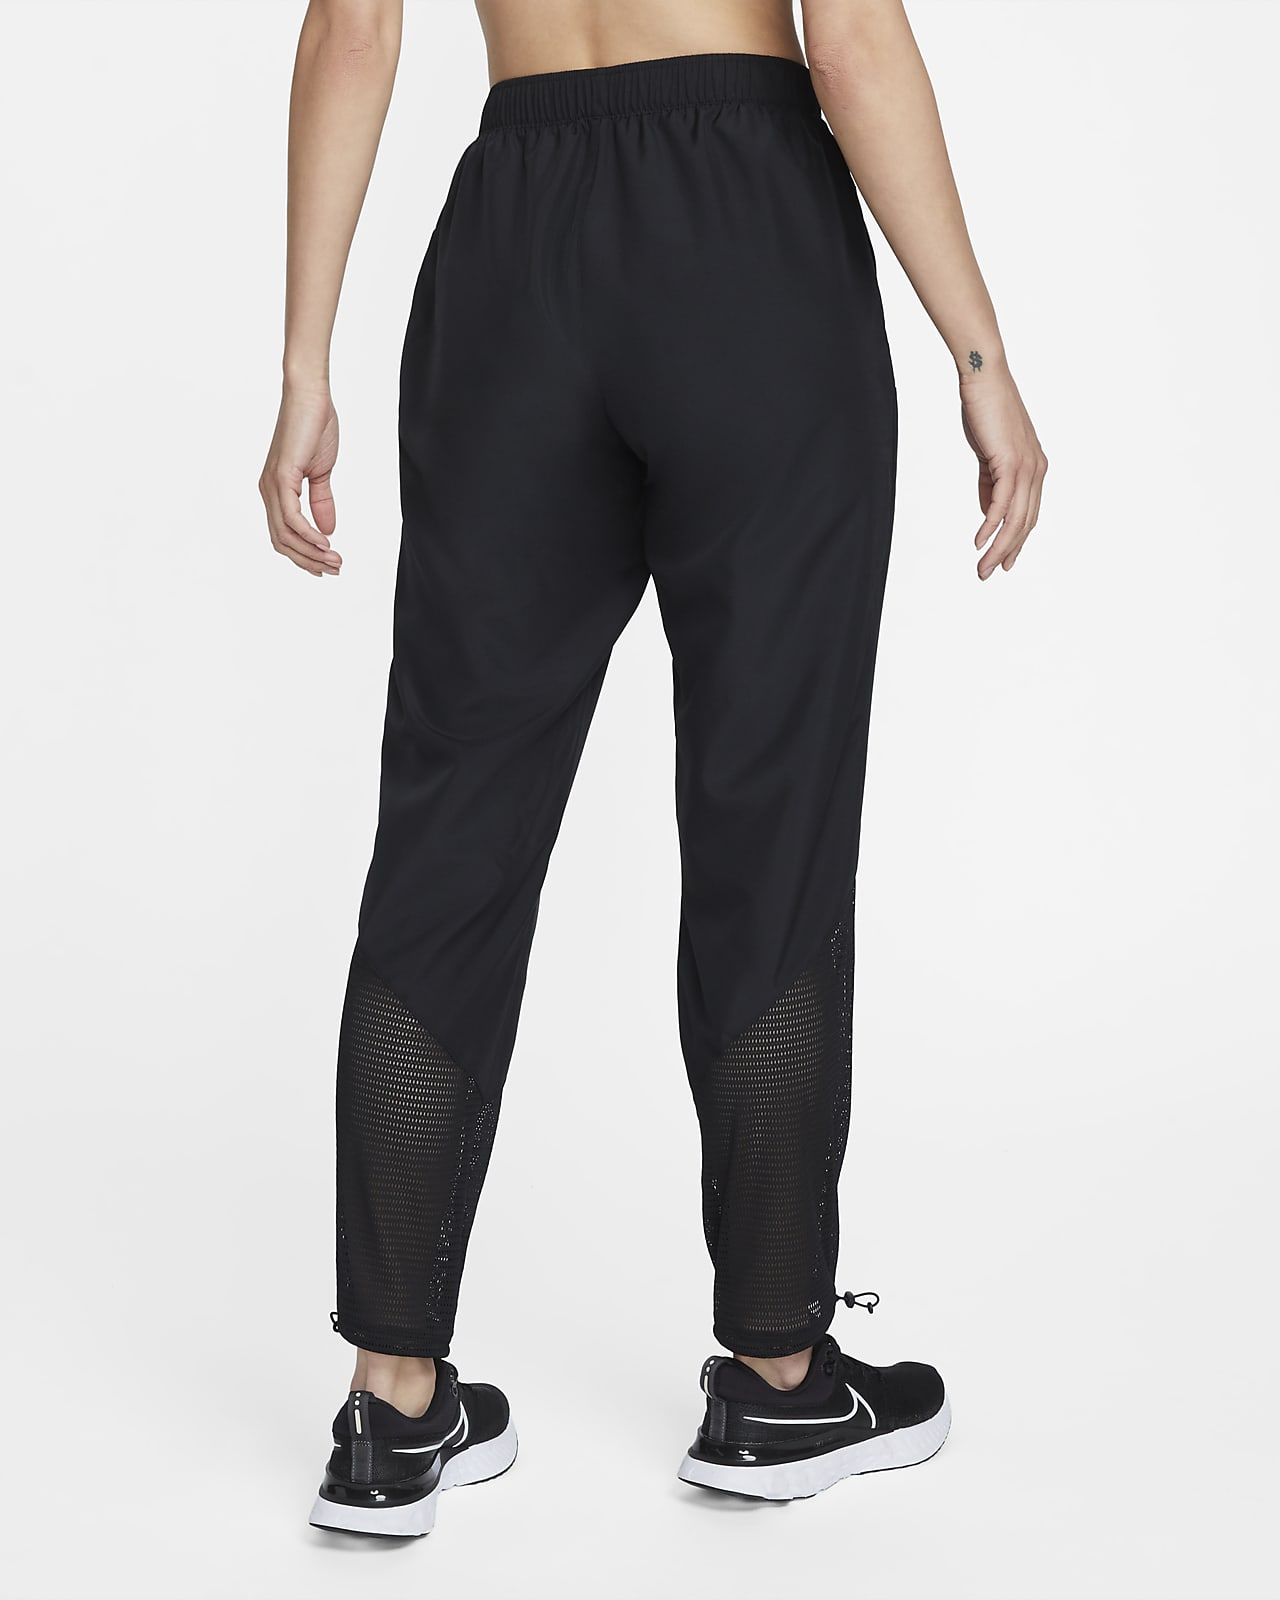 Nike Running Run Division Phantom Elite sweatpants in black | ASOS